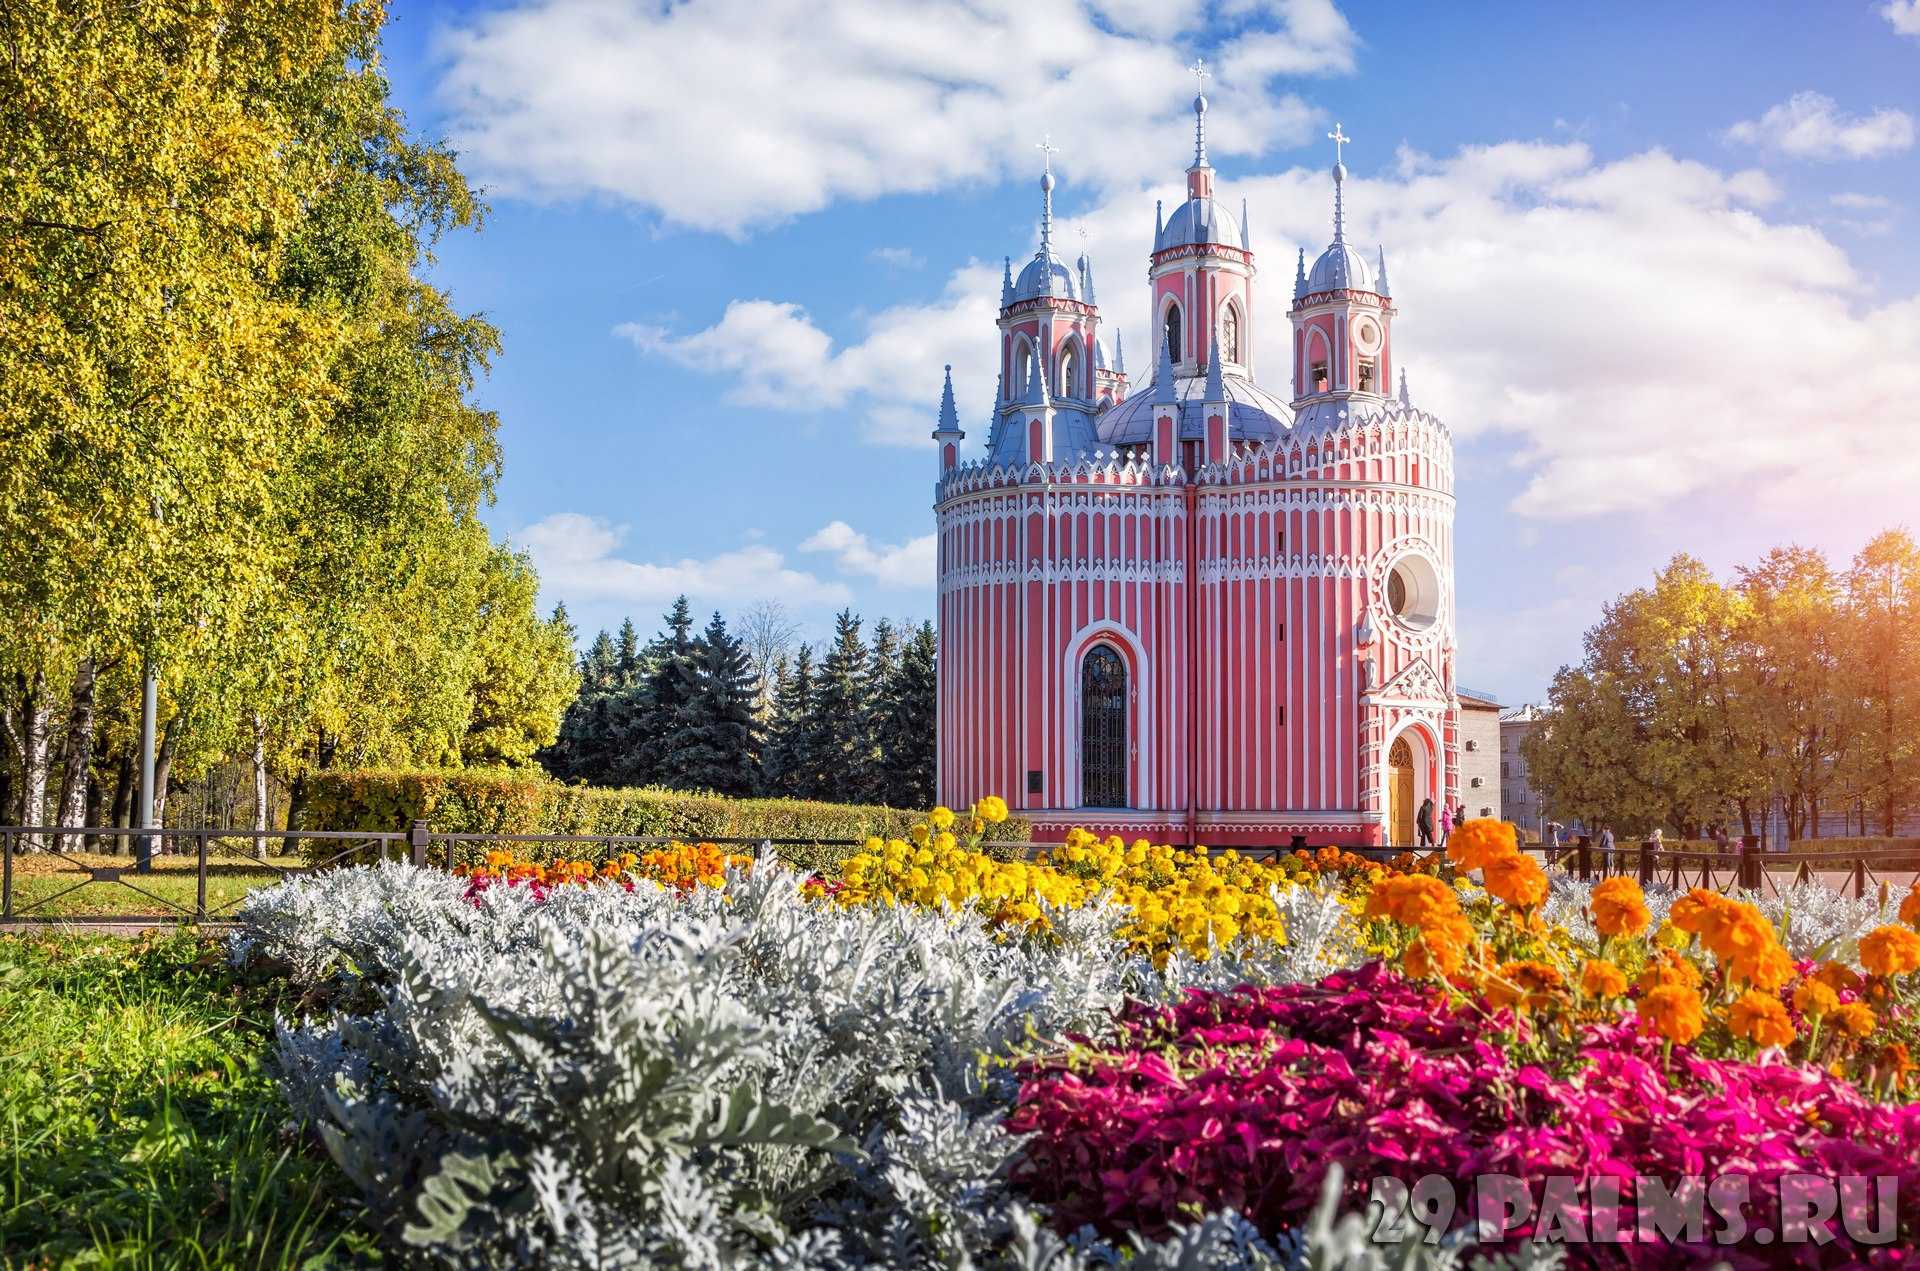 Чесменская церковь в санкт-петербурге: часы работы, расписание богослужений, адрес и фото